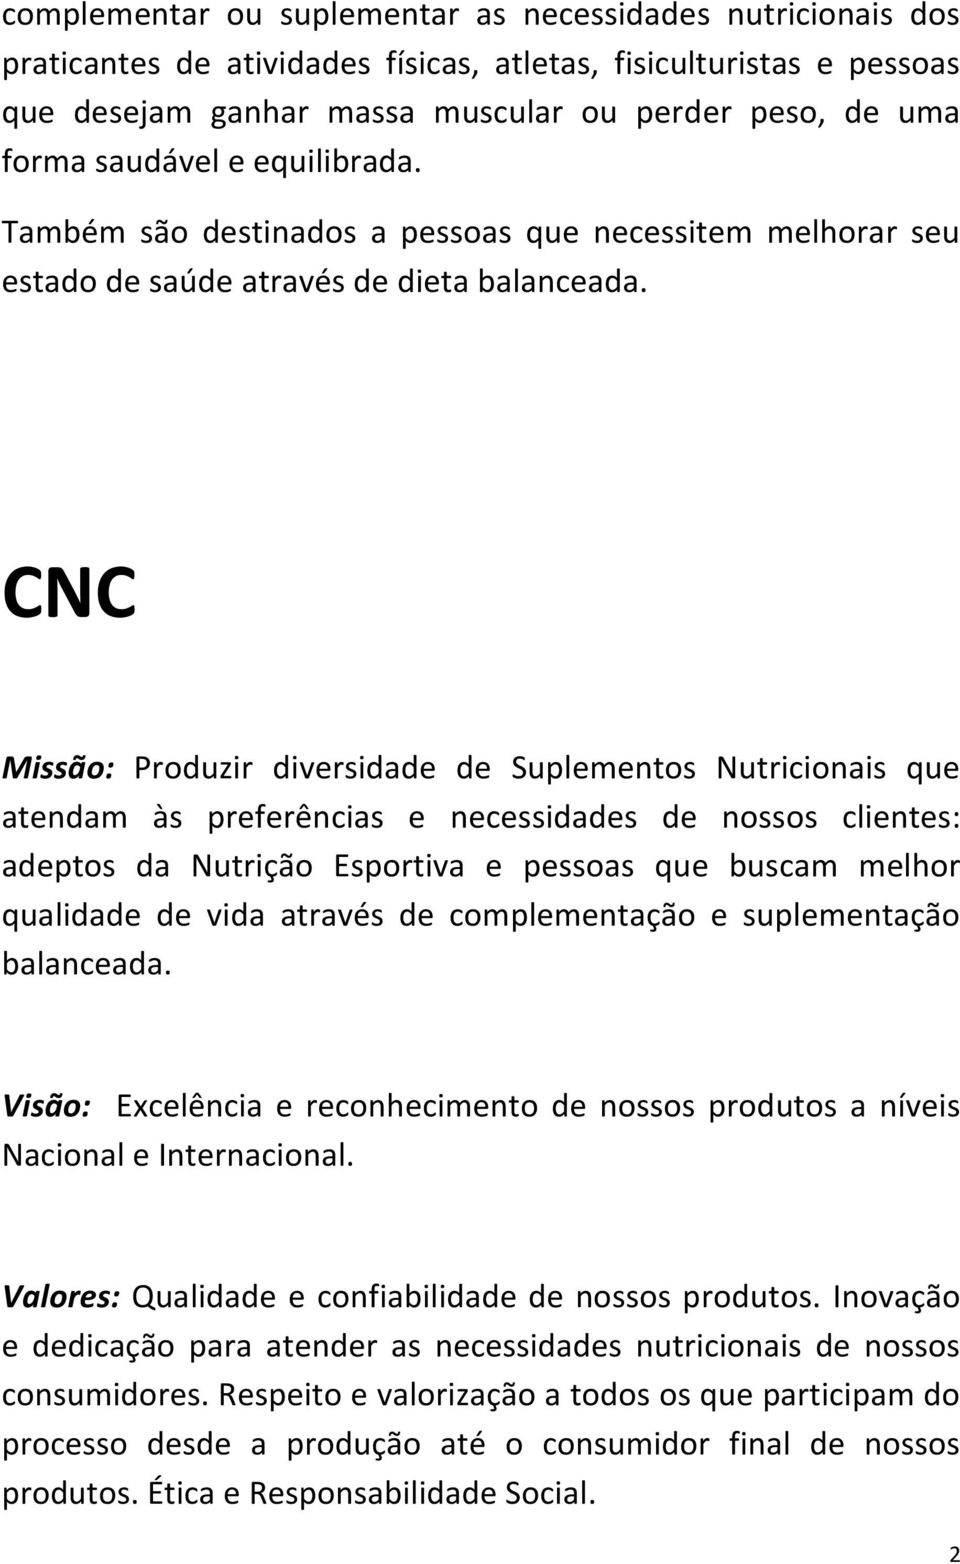 CNC Missão: Produzir diversidade de Suplementos Nutricionais que atendam às preferências e necessidades de nossos clientes: adeptos da Nutrição Esportiva e pessoas que buscam melhor qualidade de vida